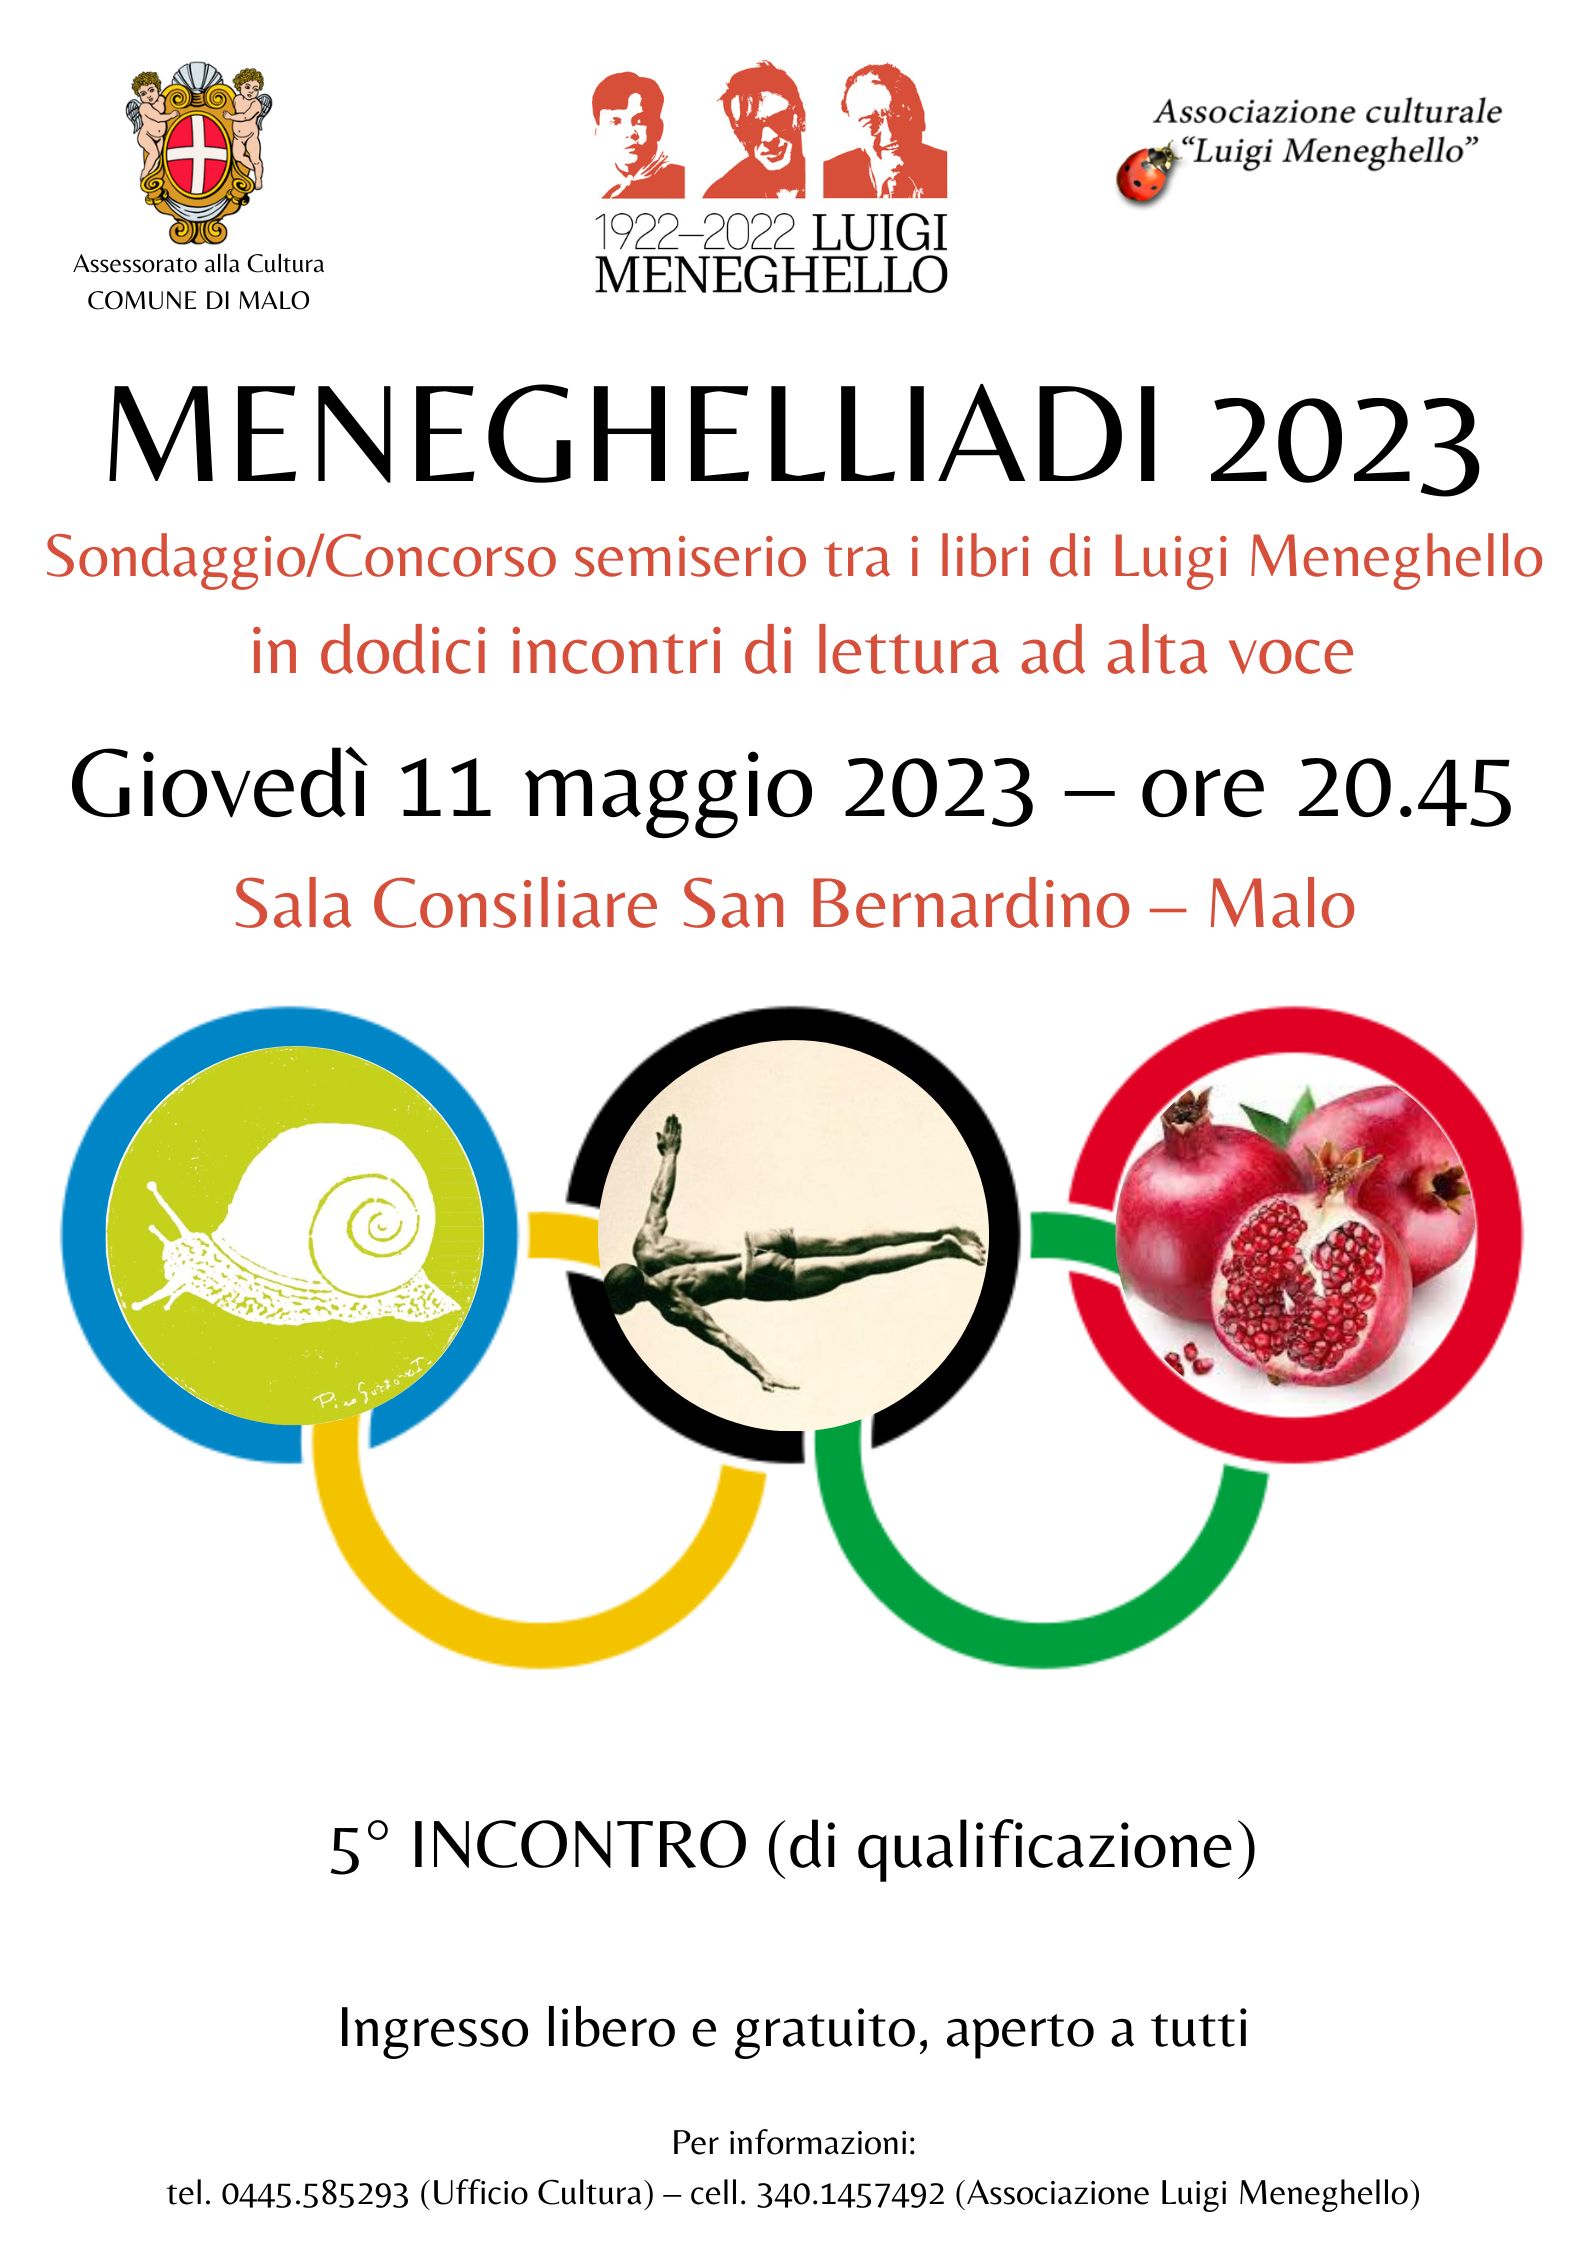 Meneghelliadi 2023. 5° incontro (di qualificazione)